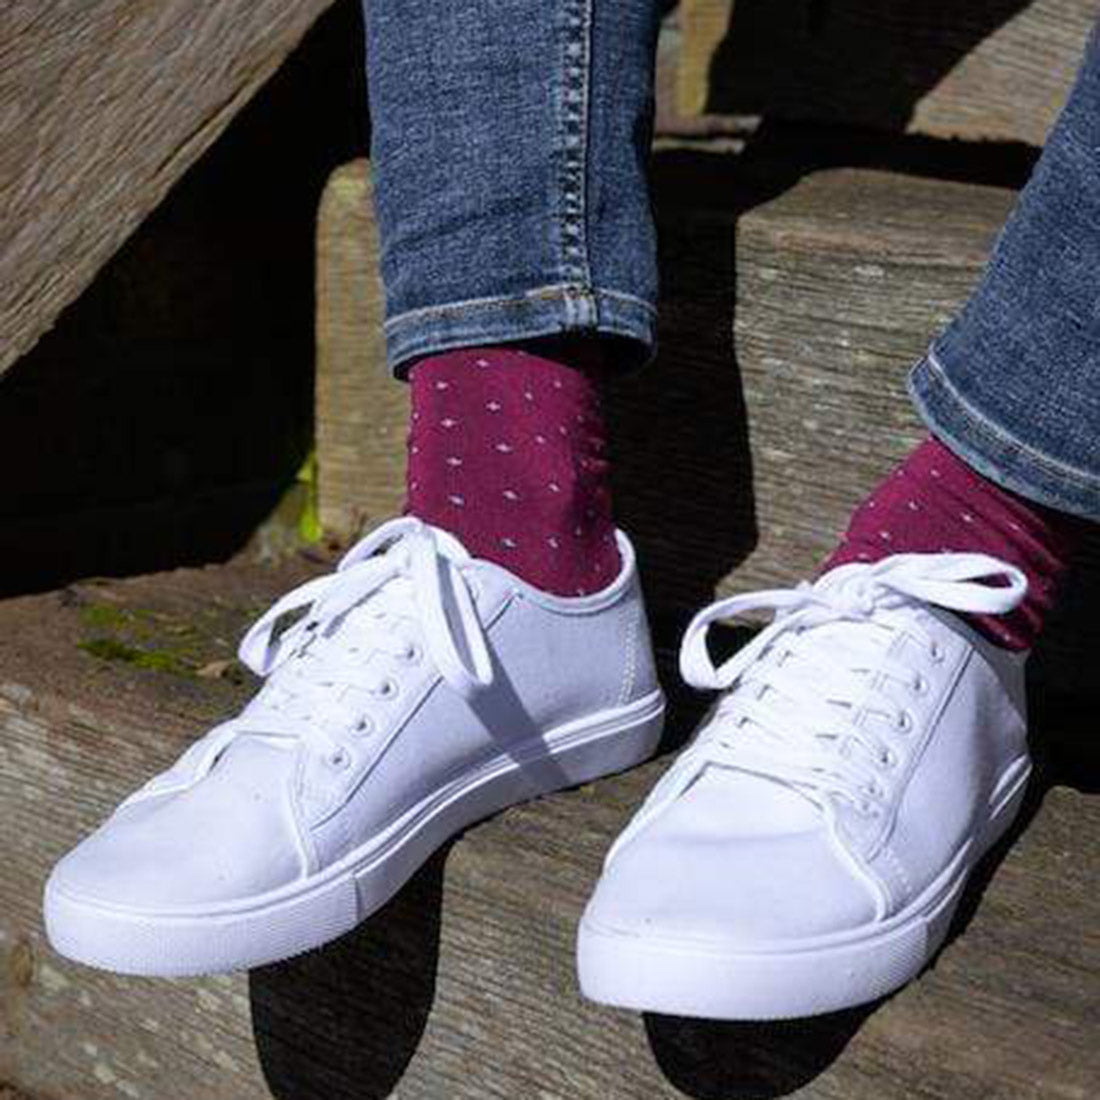 socks-spotted-burgundy-bamboo-socks-2.jpg